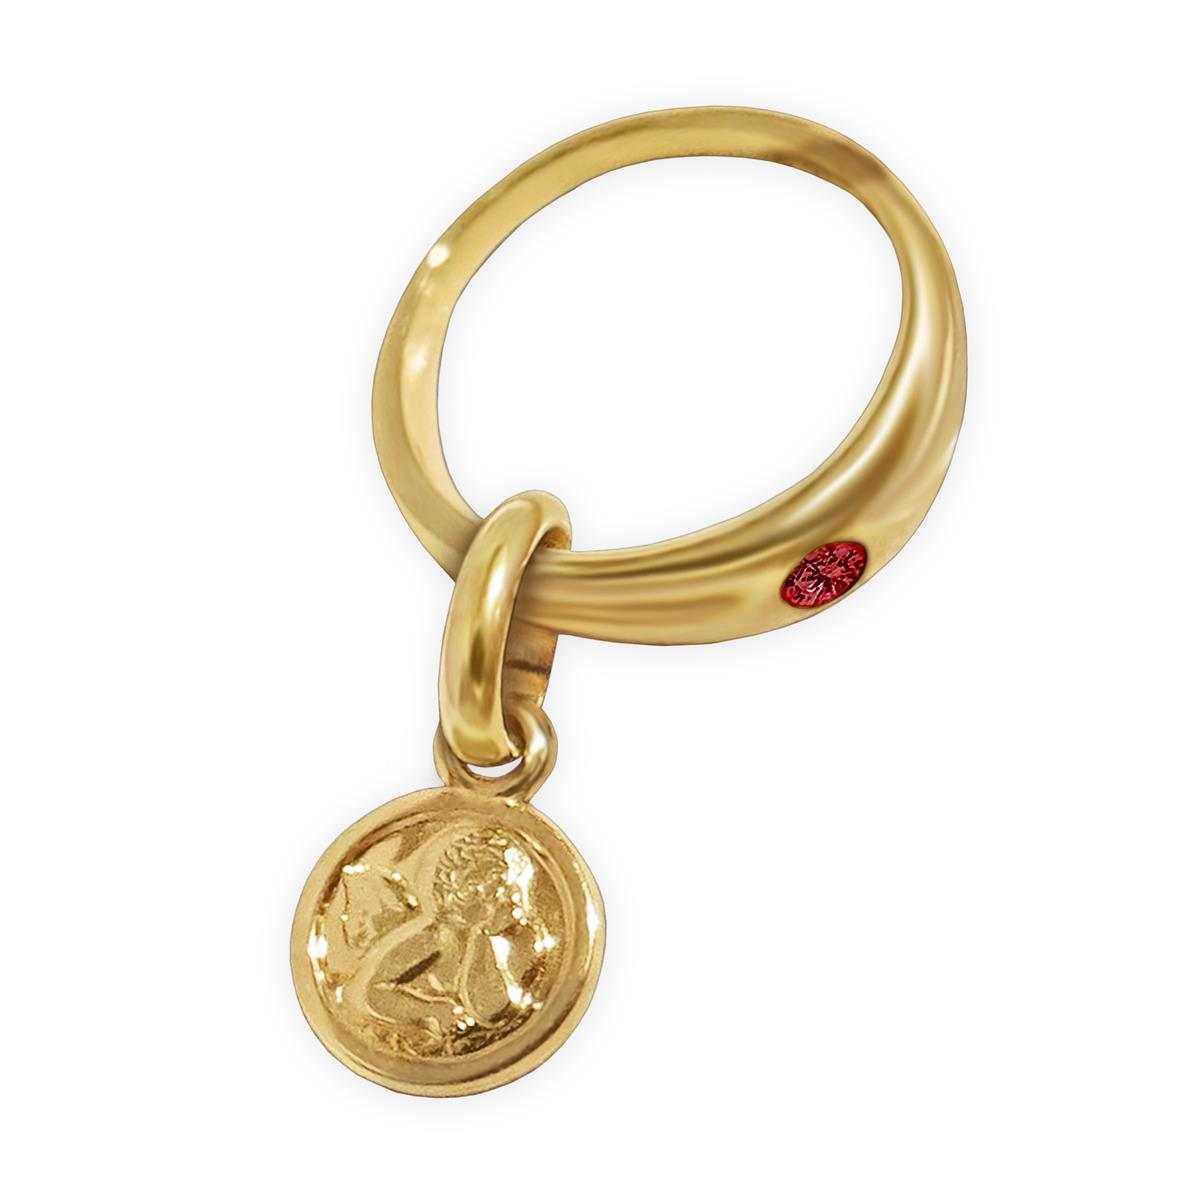 Goldener Taufring 12 mm mit Engel rund und Edelstein Rubin rot glänzend 333 Gold 8 Karat